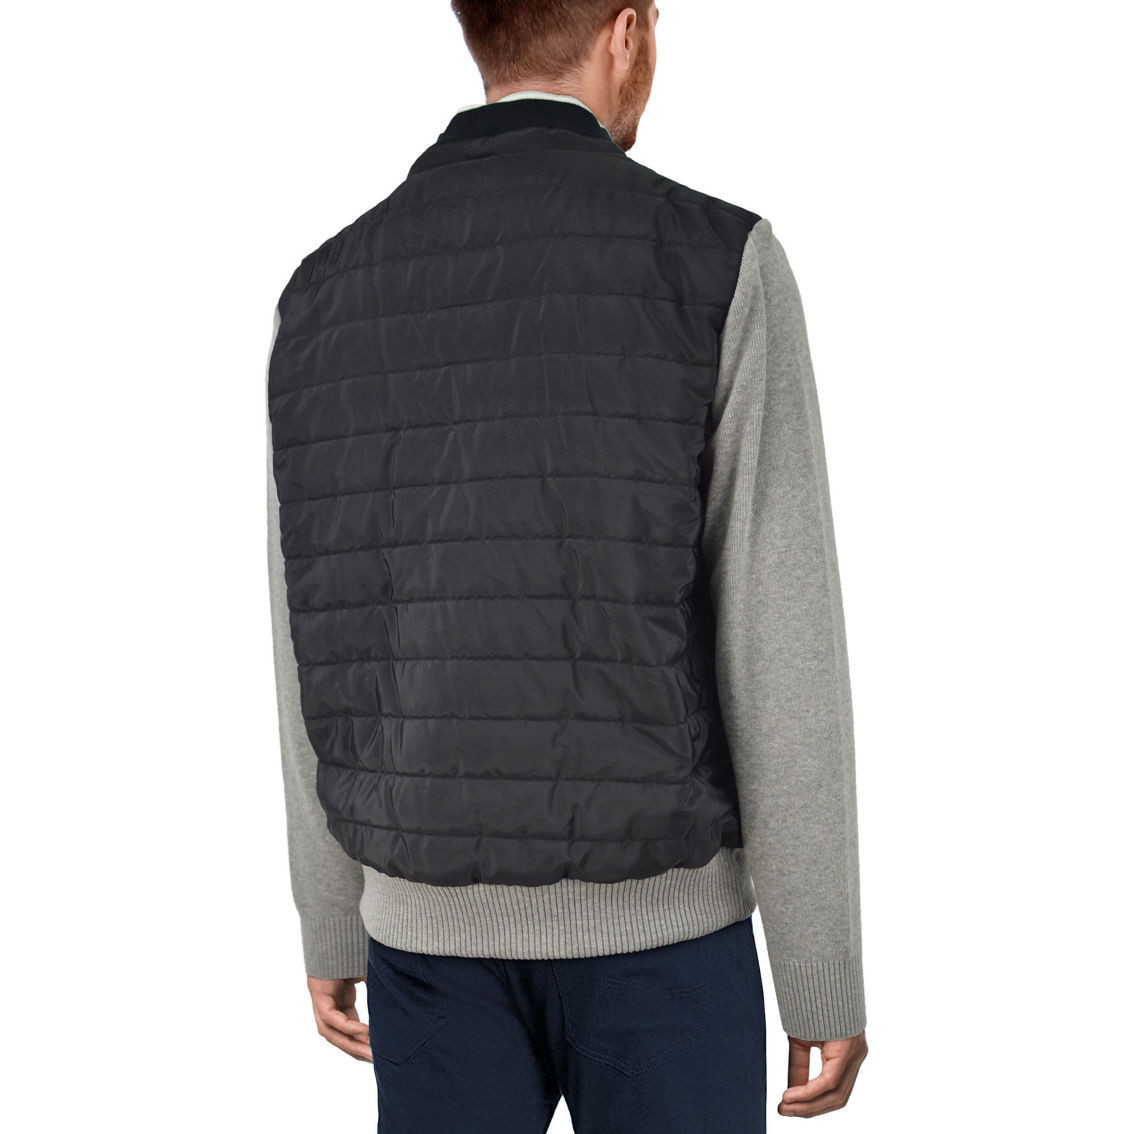 Men's Lightly Padded Hybrid Sweater Jacket - Image 2 of 2